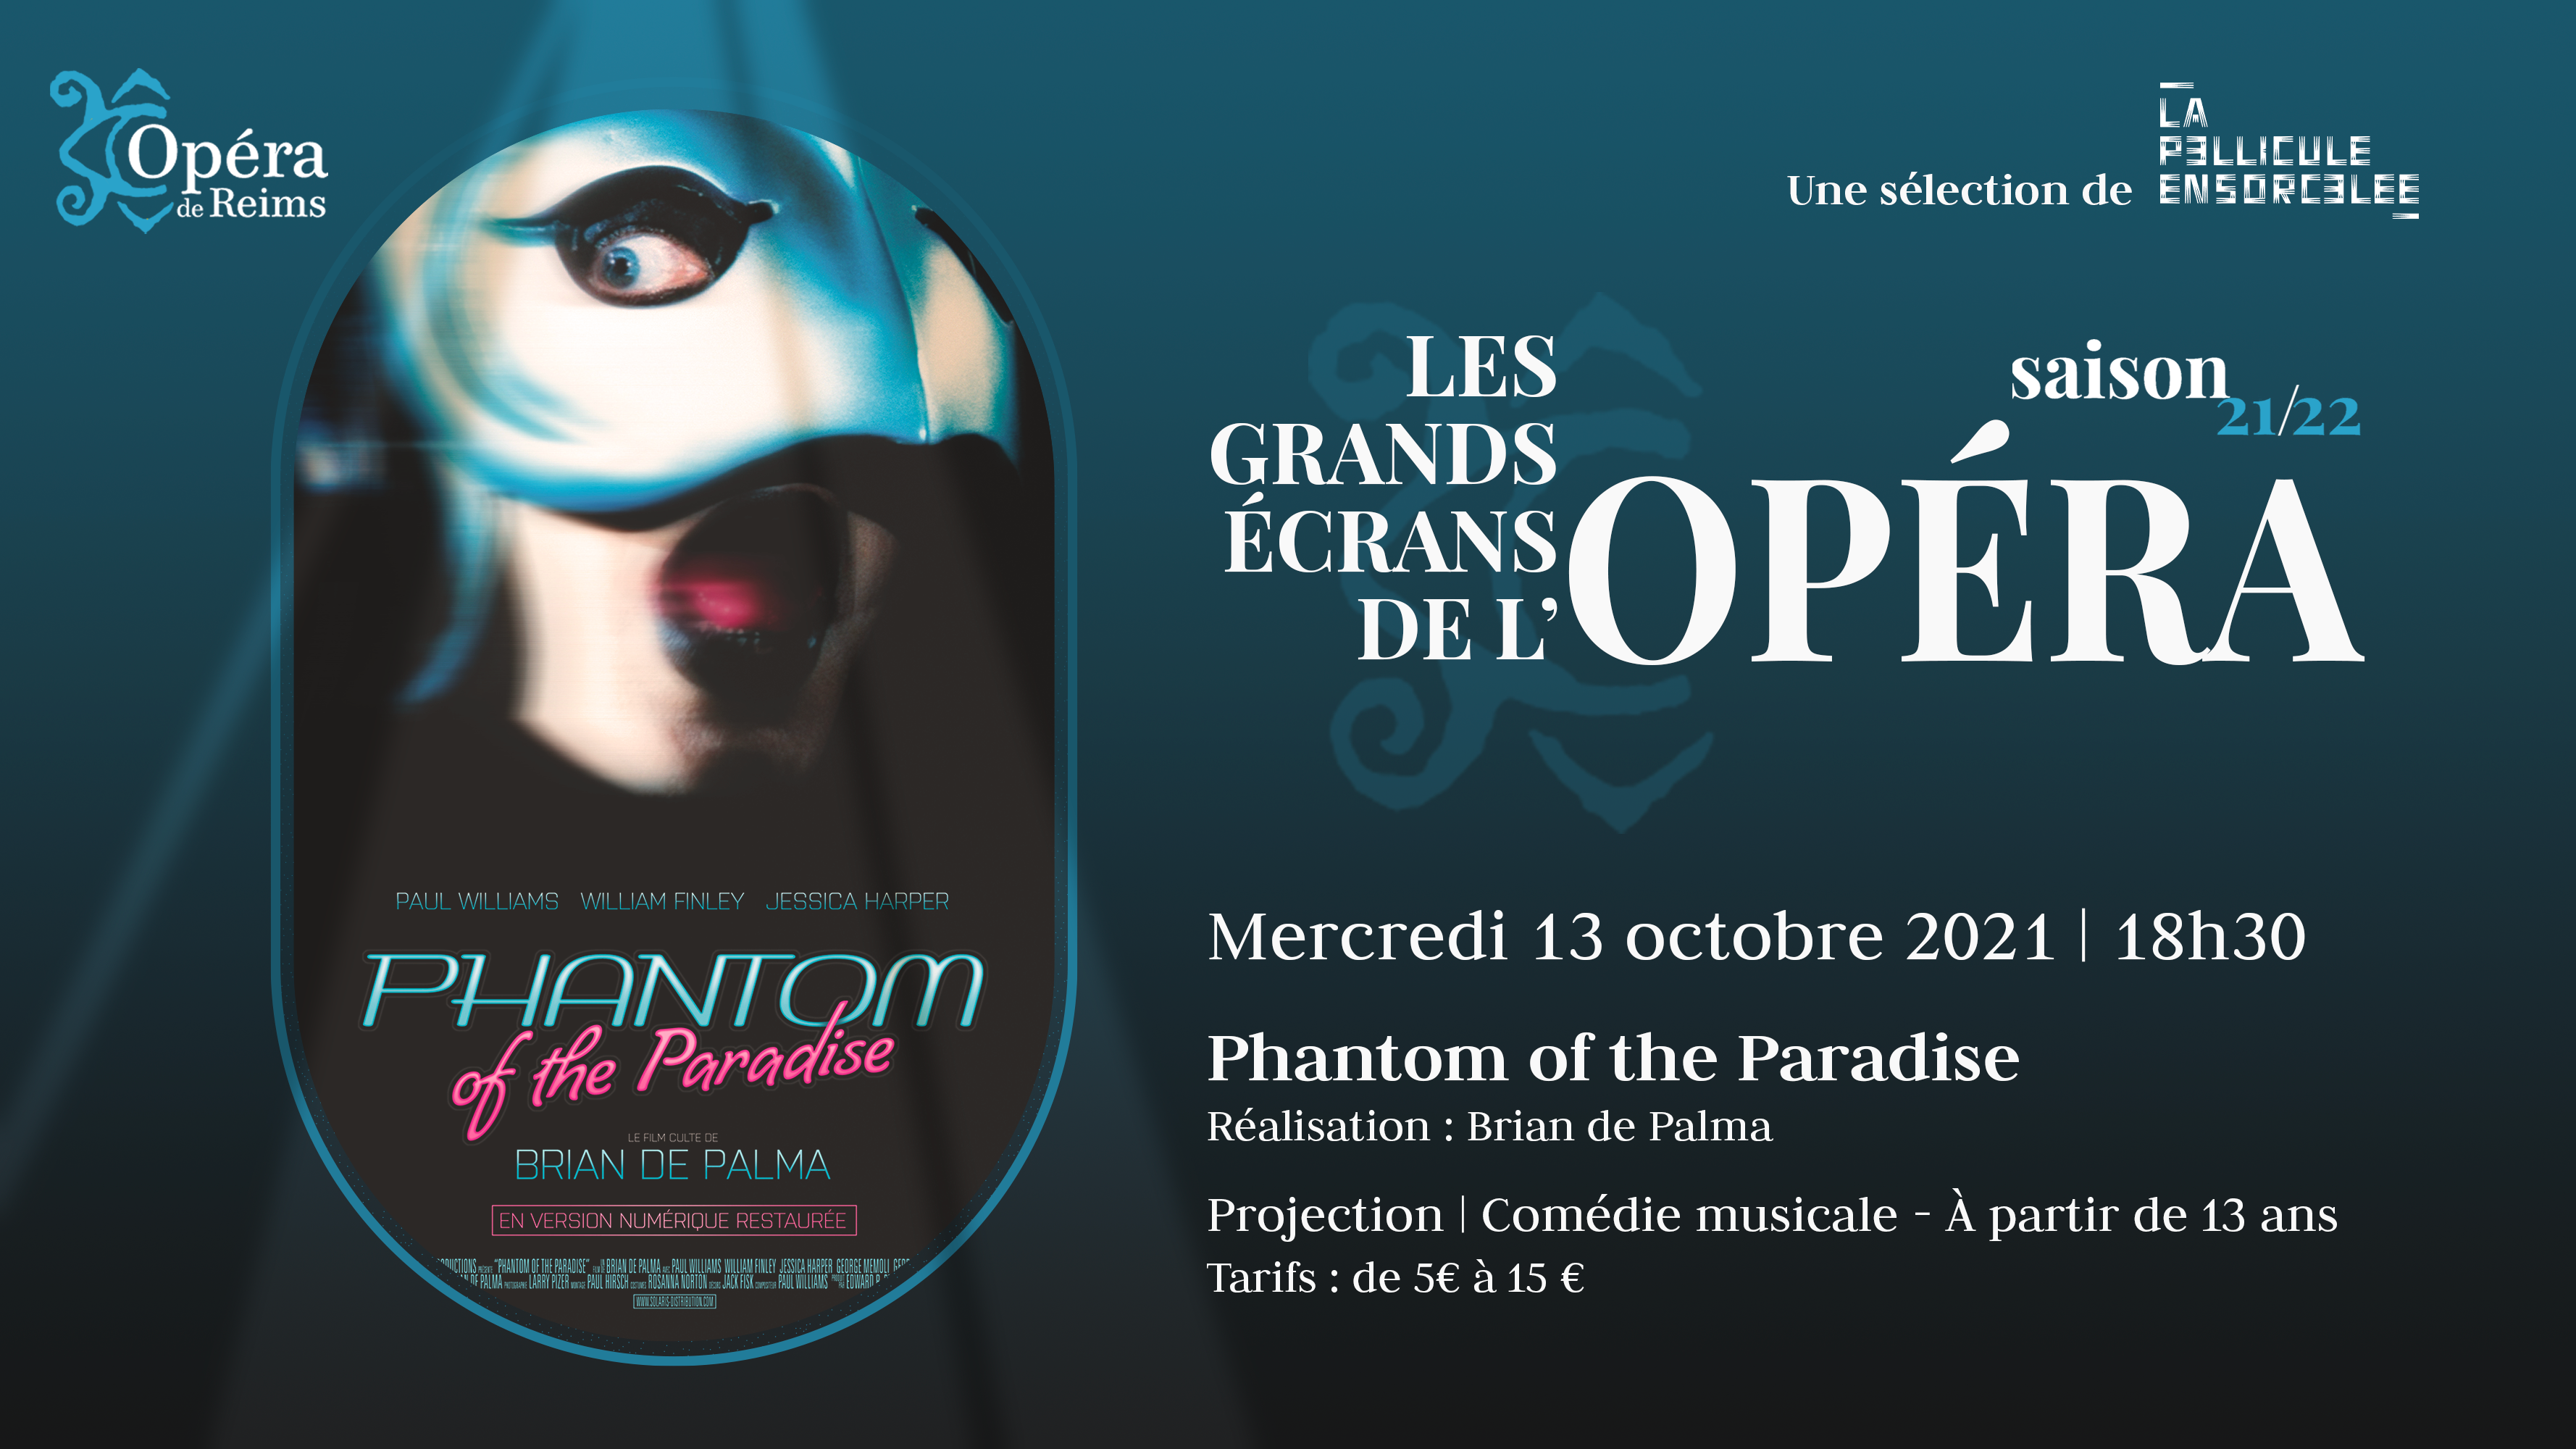 Les Grands Écrans de l’Opéra - Phantom of the paradise